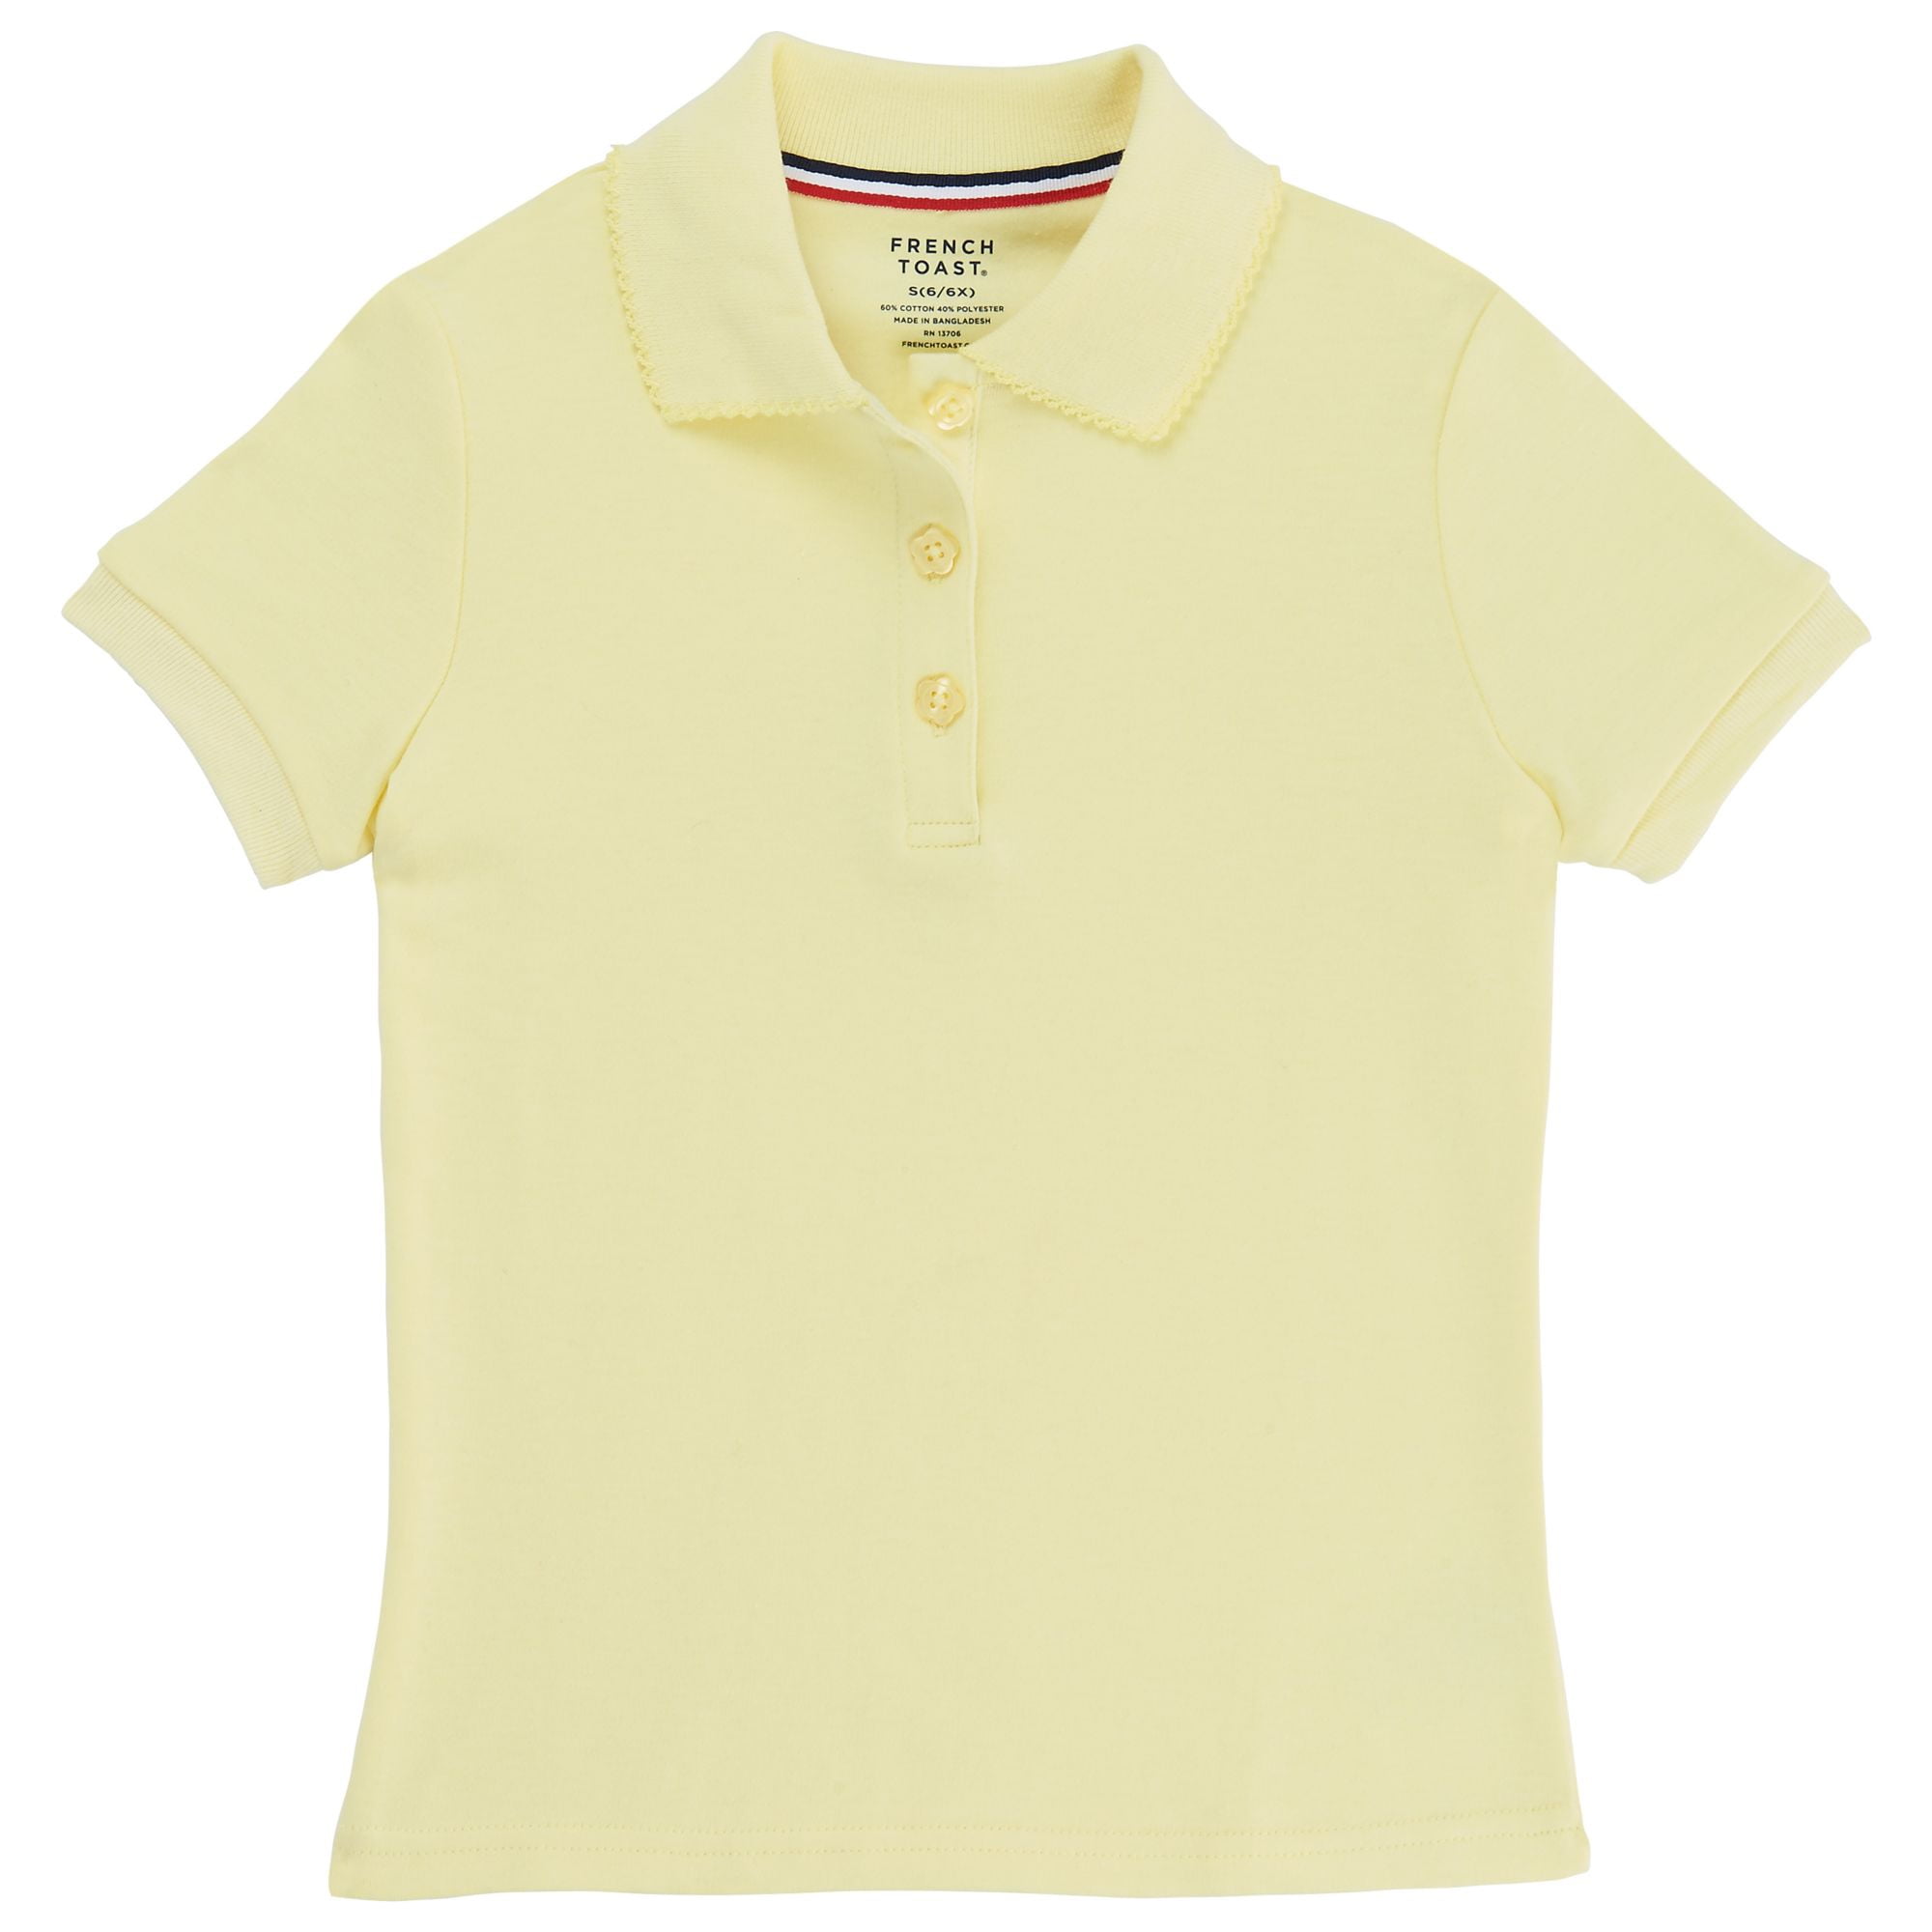 girls yellow polo shirt